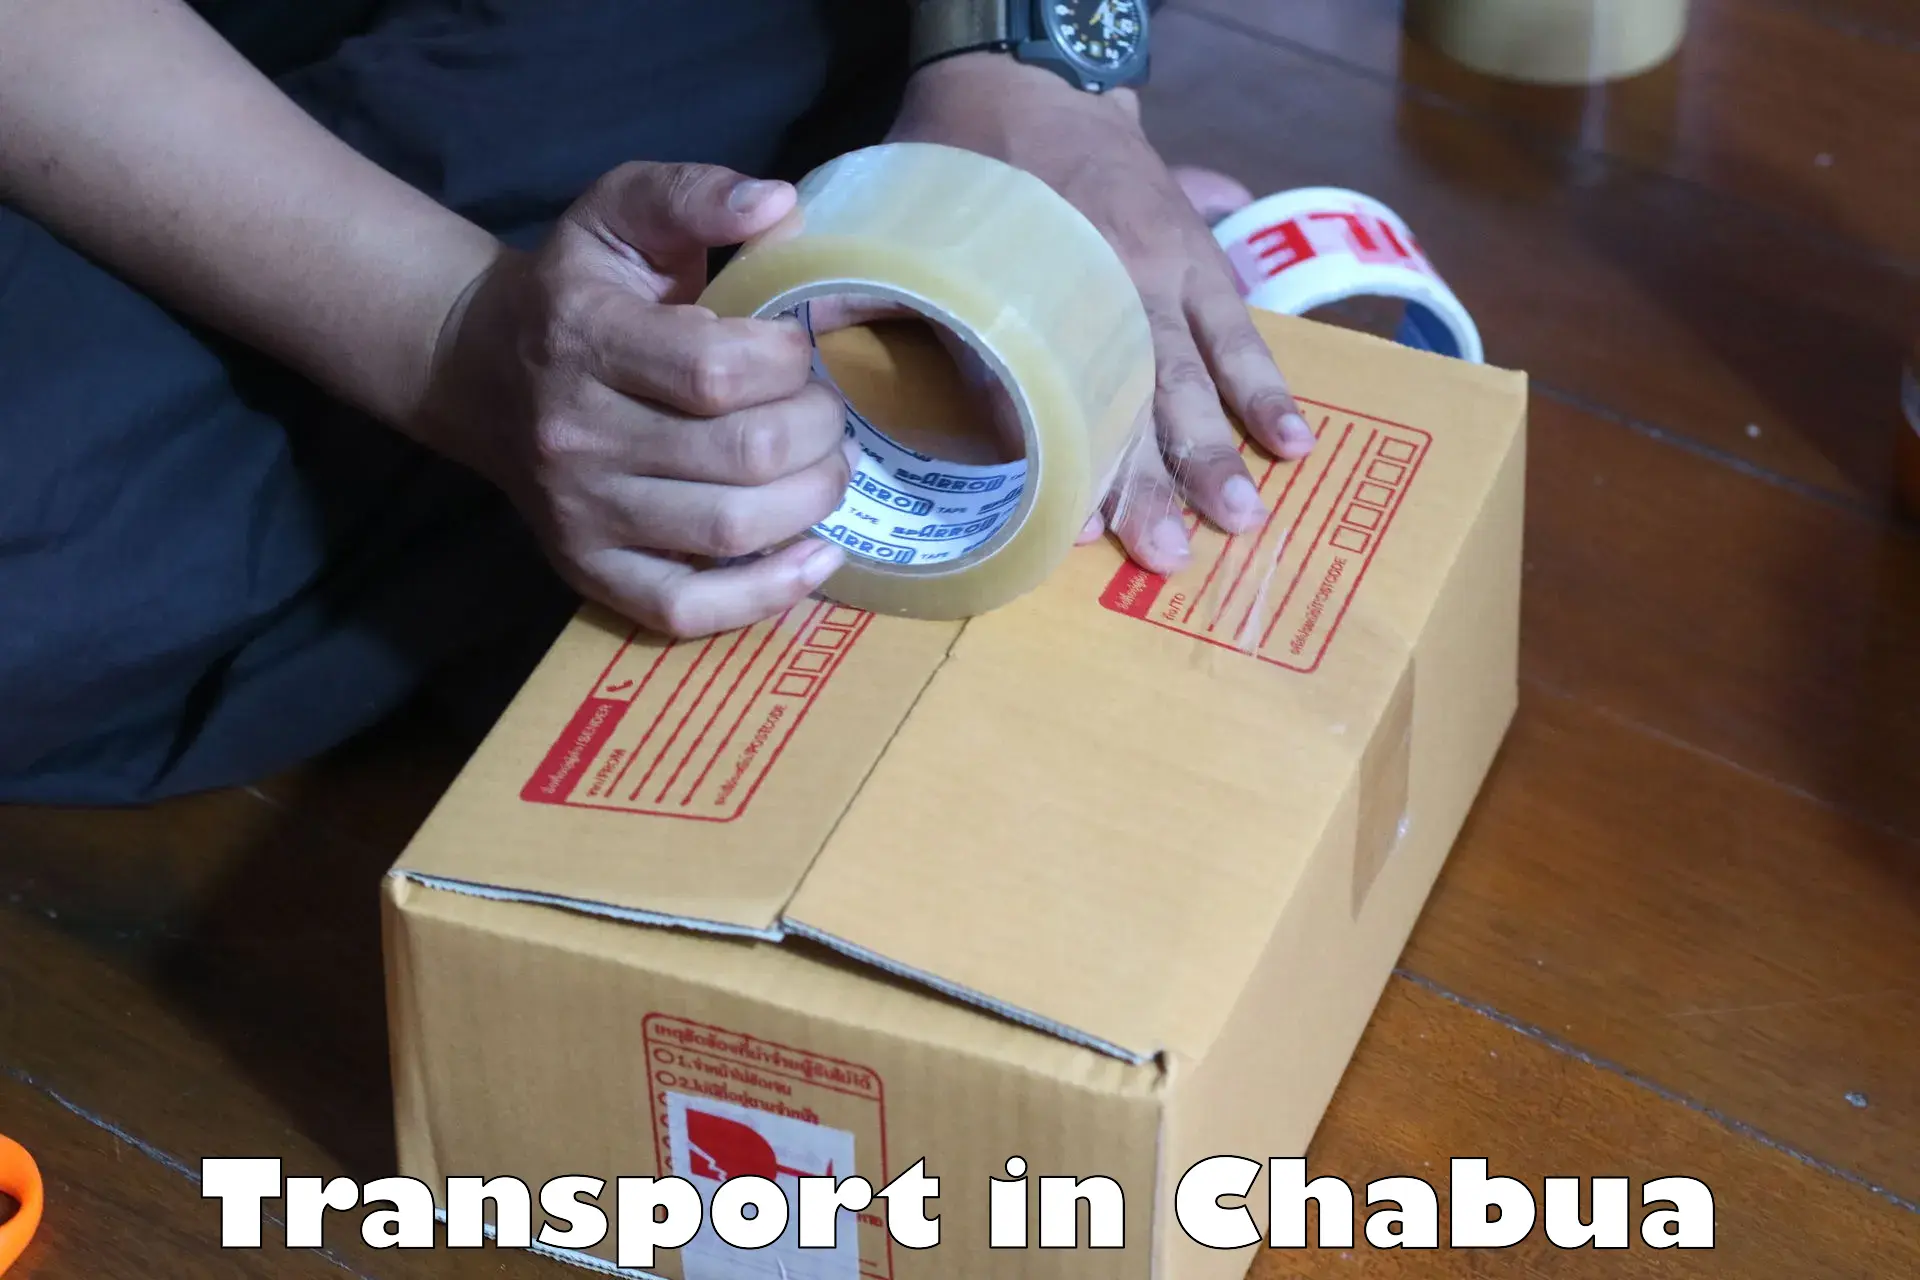 Domestic transport services in Chabua